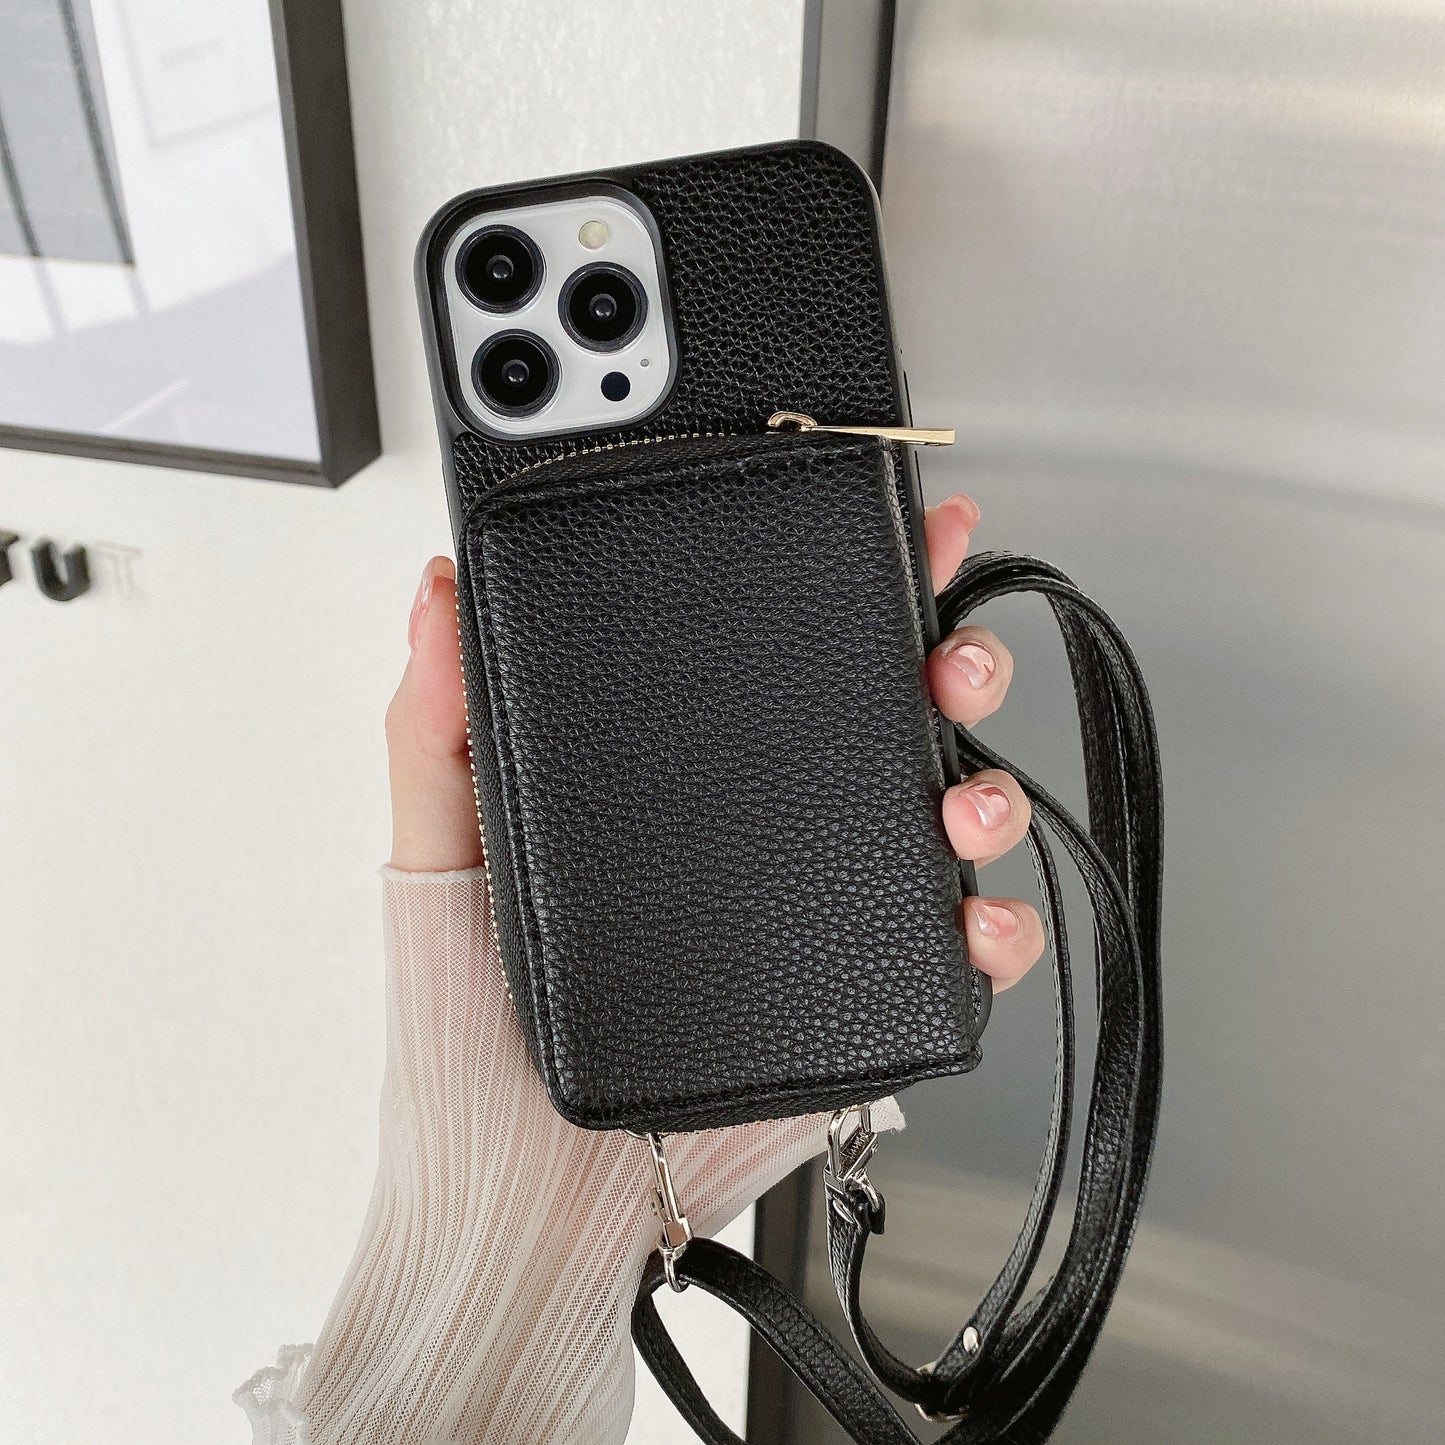 Handy-Lederschutzhülle mit Portemonnaie zum umhängen